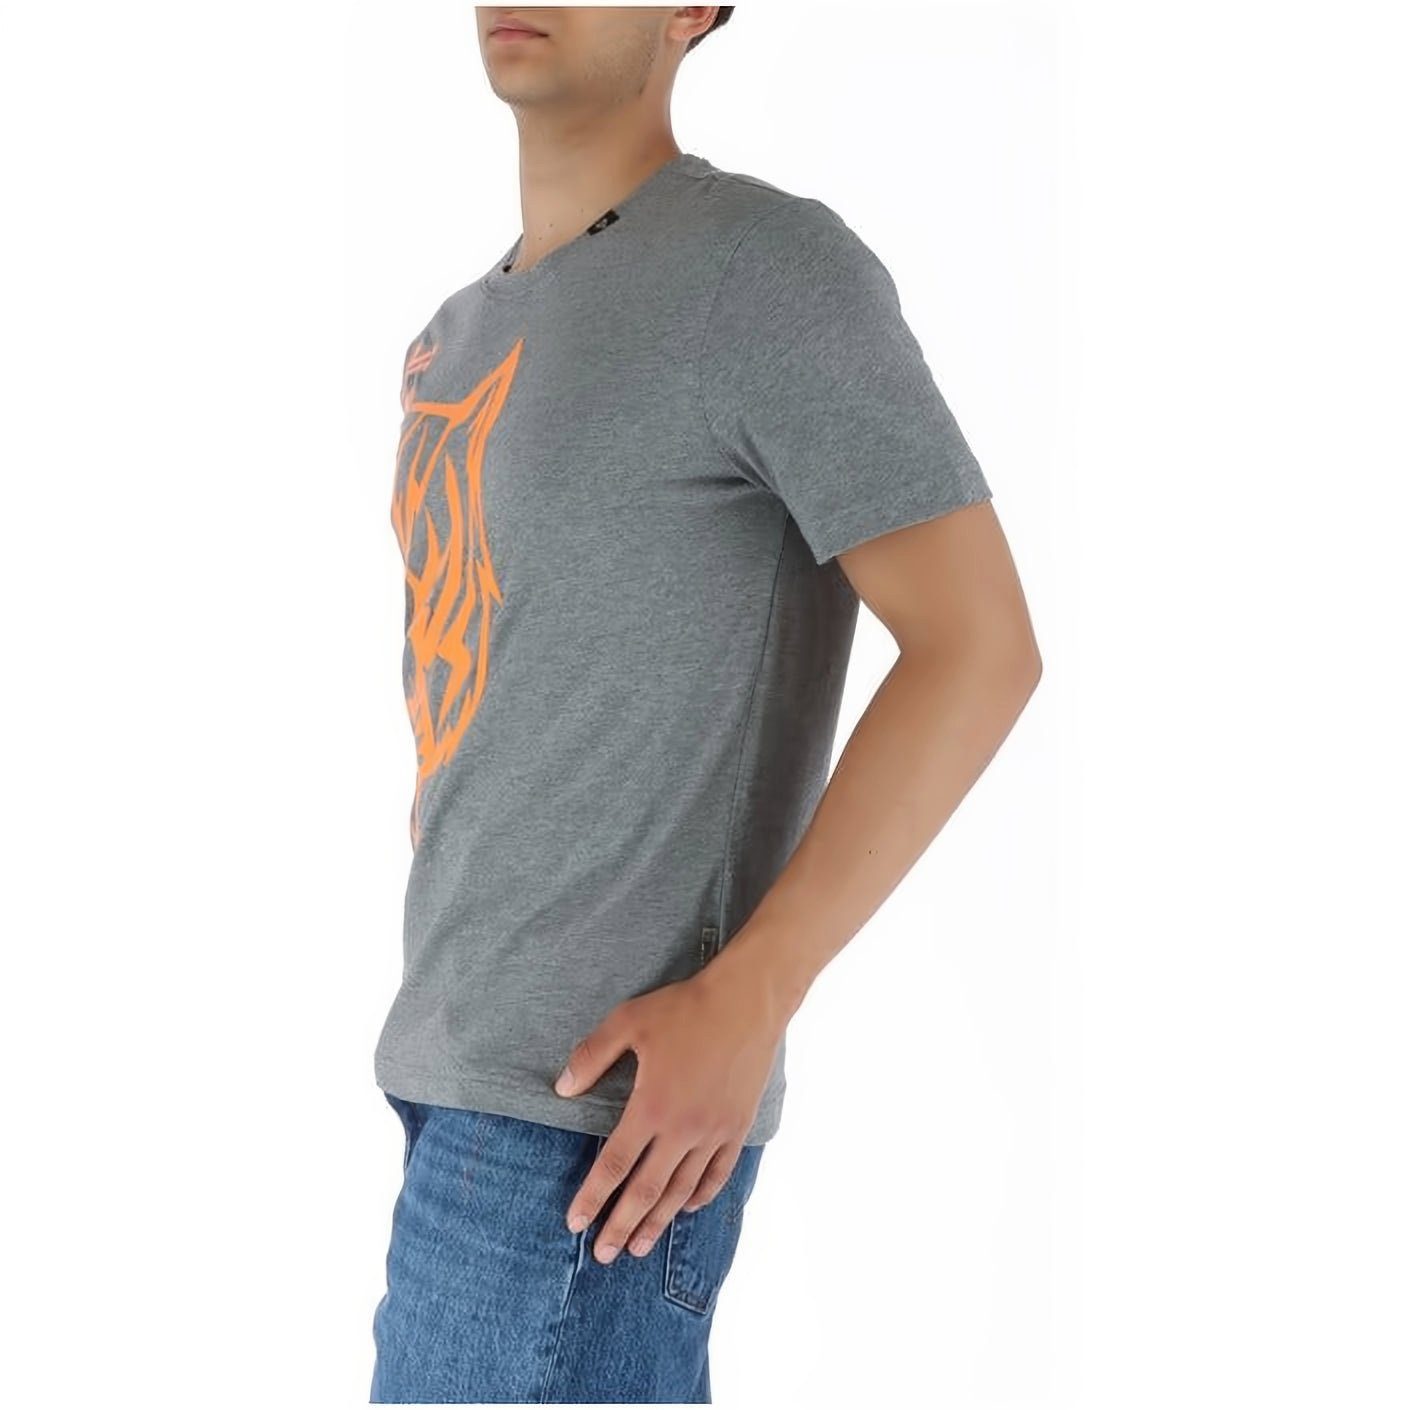 T-Shirt Farbauswahl Look, SPORT vielfältige hoher Tragekomfort, ROUND PLEIN Stylischer NECK